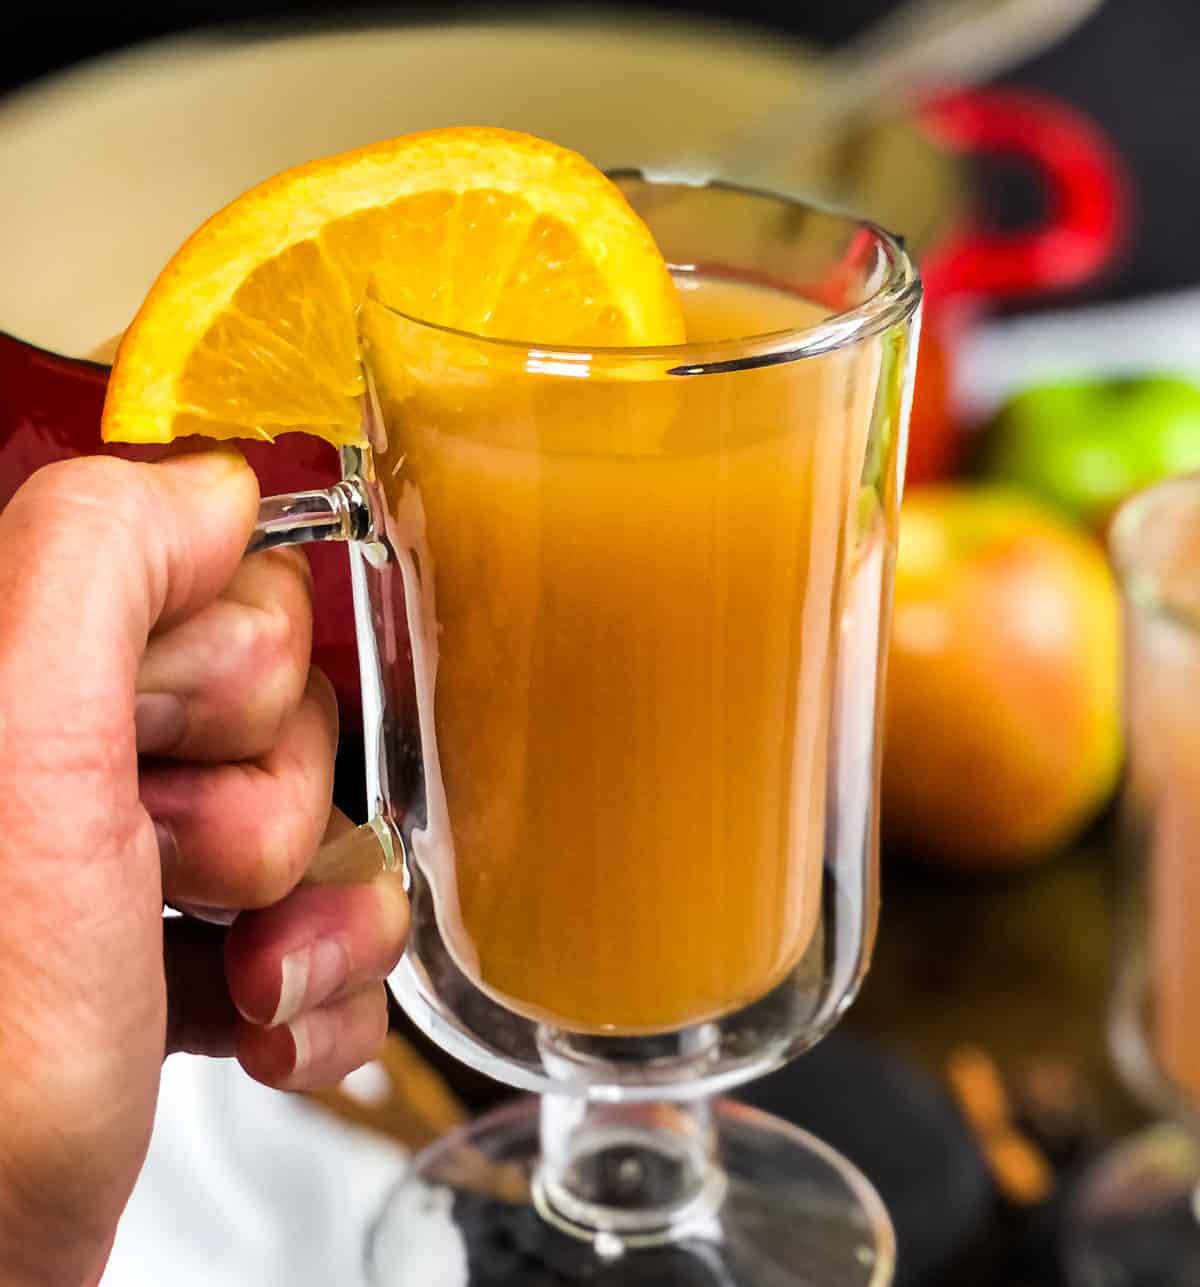 Hand holding a glass mug of spiced apple cider garnished with an orange slice.